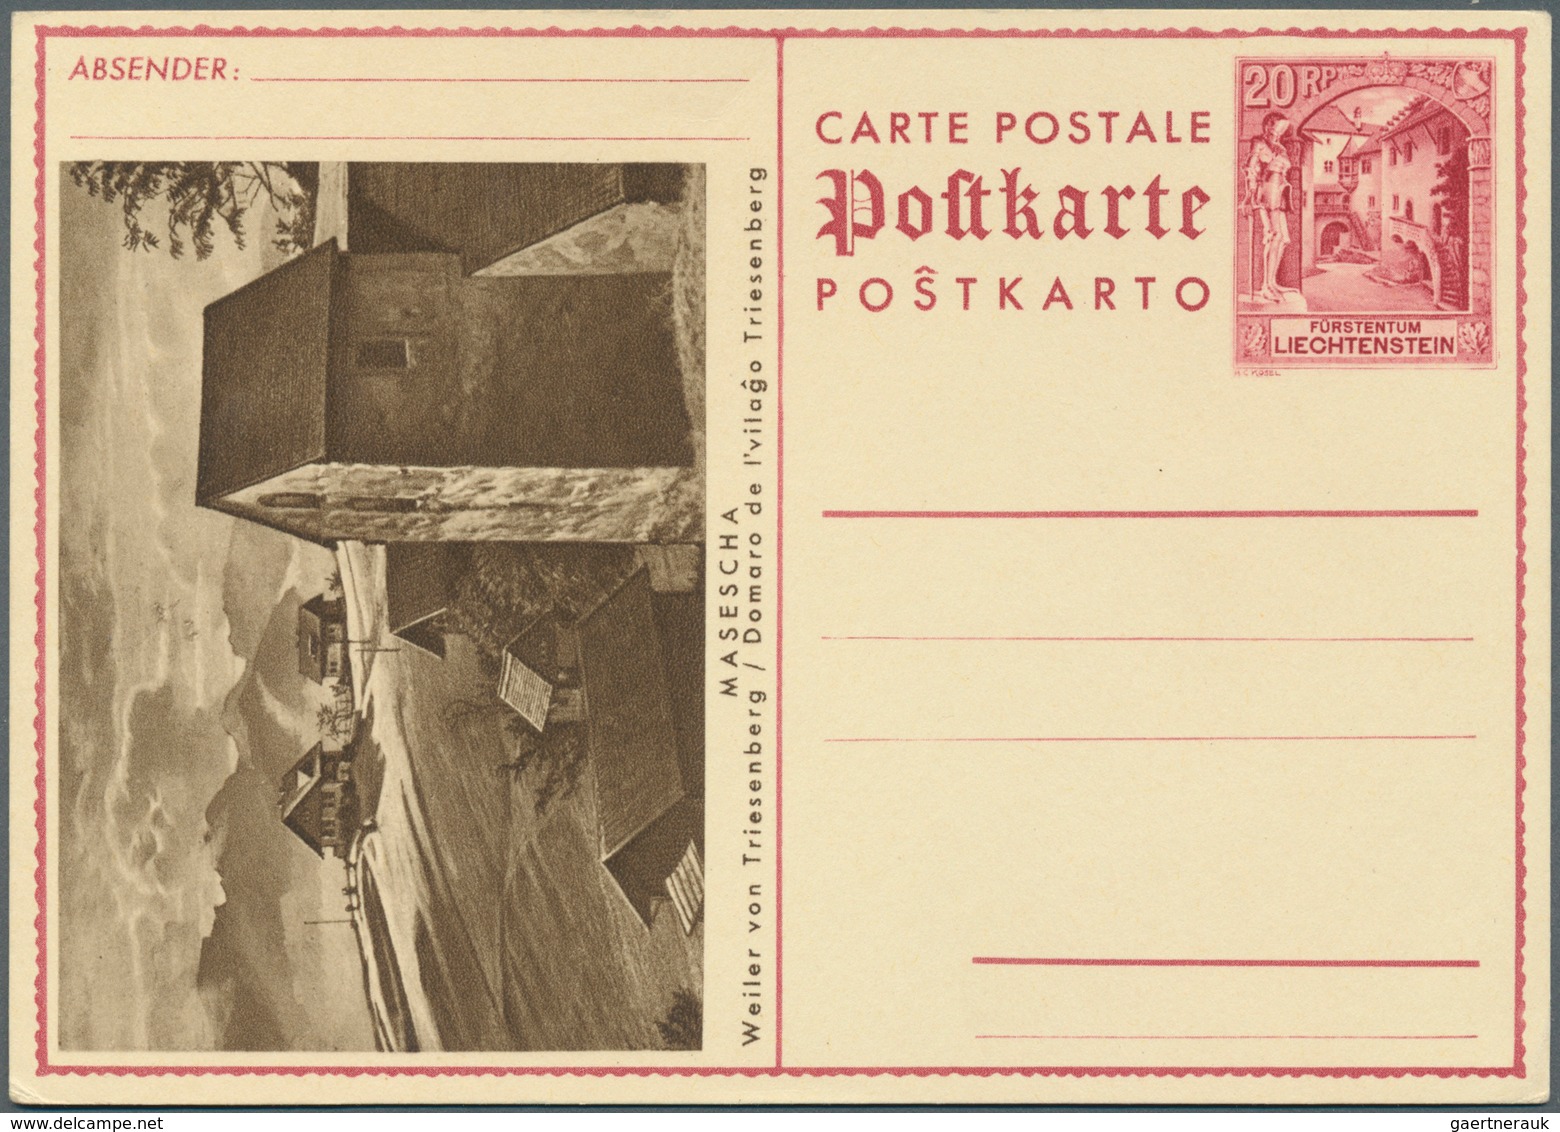 27201 Liechtenstein: 1918/1960, netter Sammlungsposten von über 100 Briefen und Ganzsachen, dabei bessere